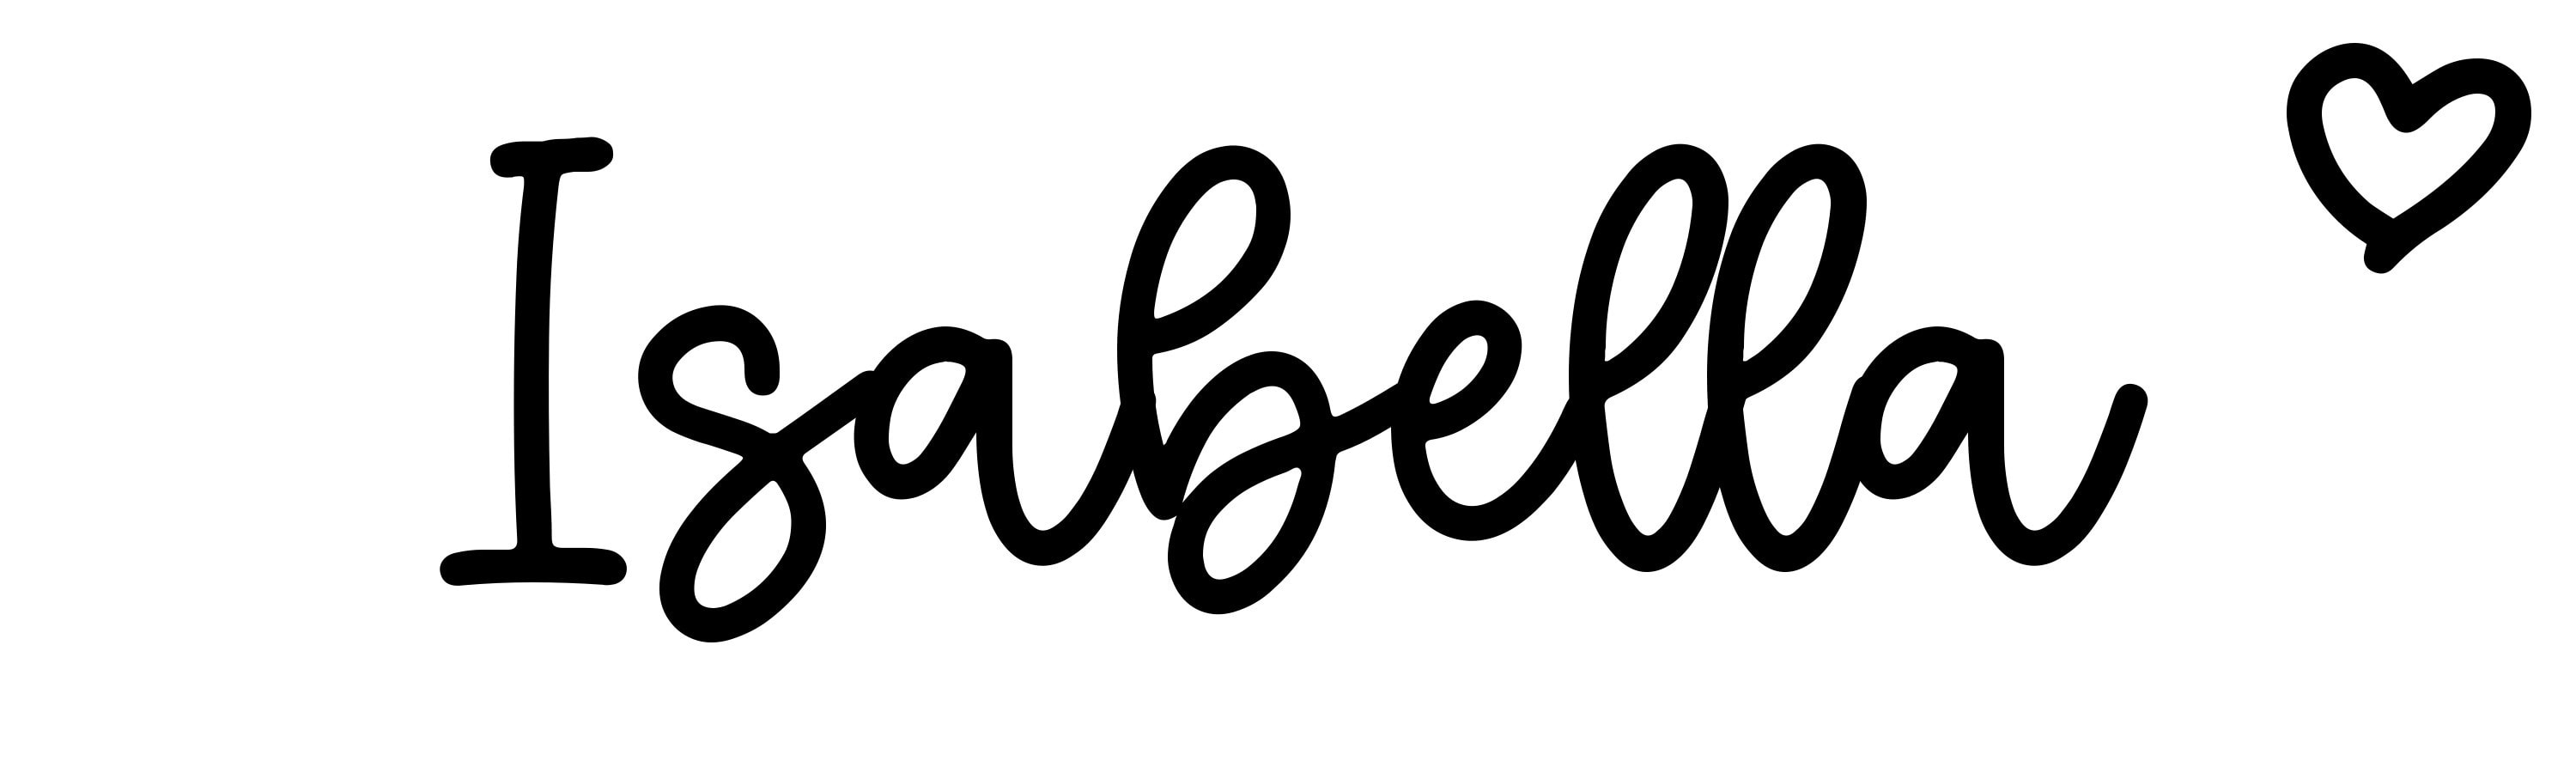 Isabella - Click Baby Names